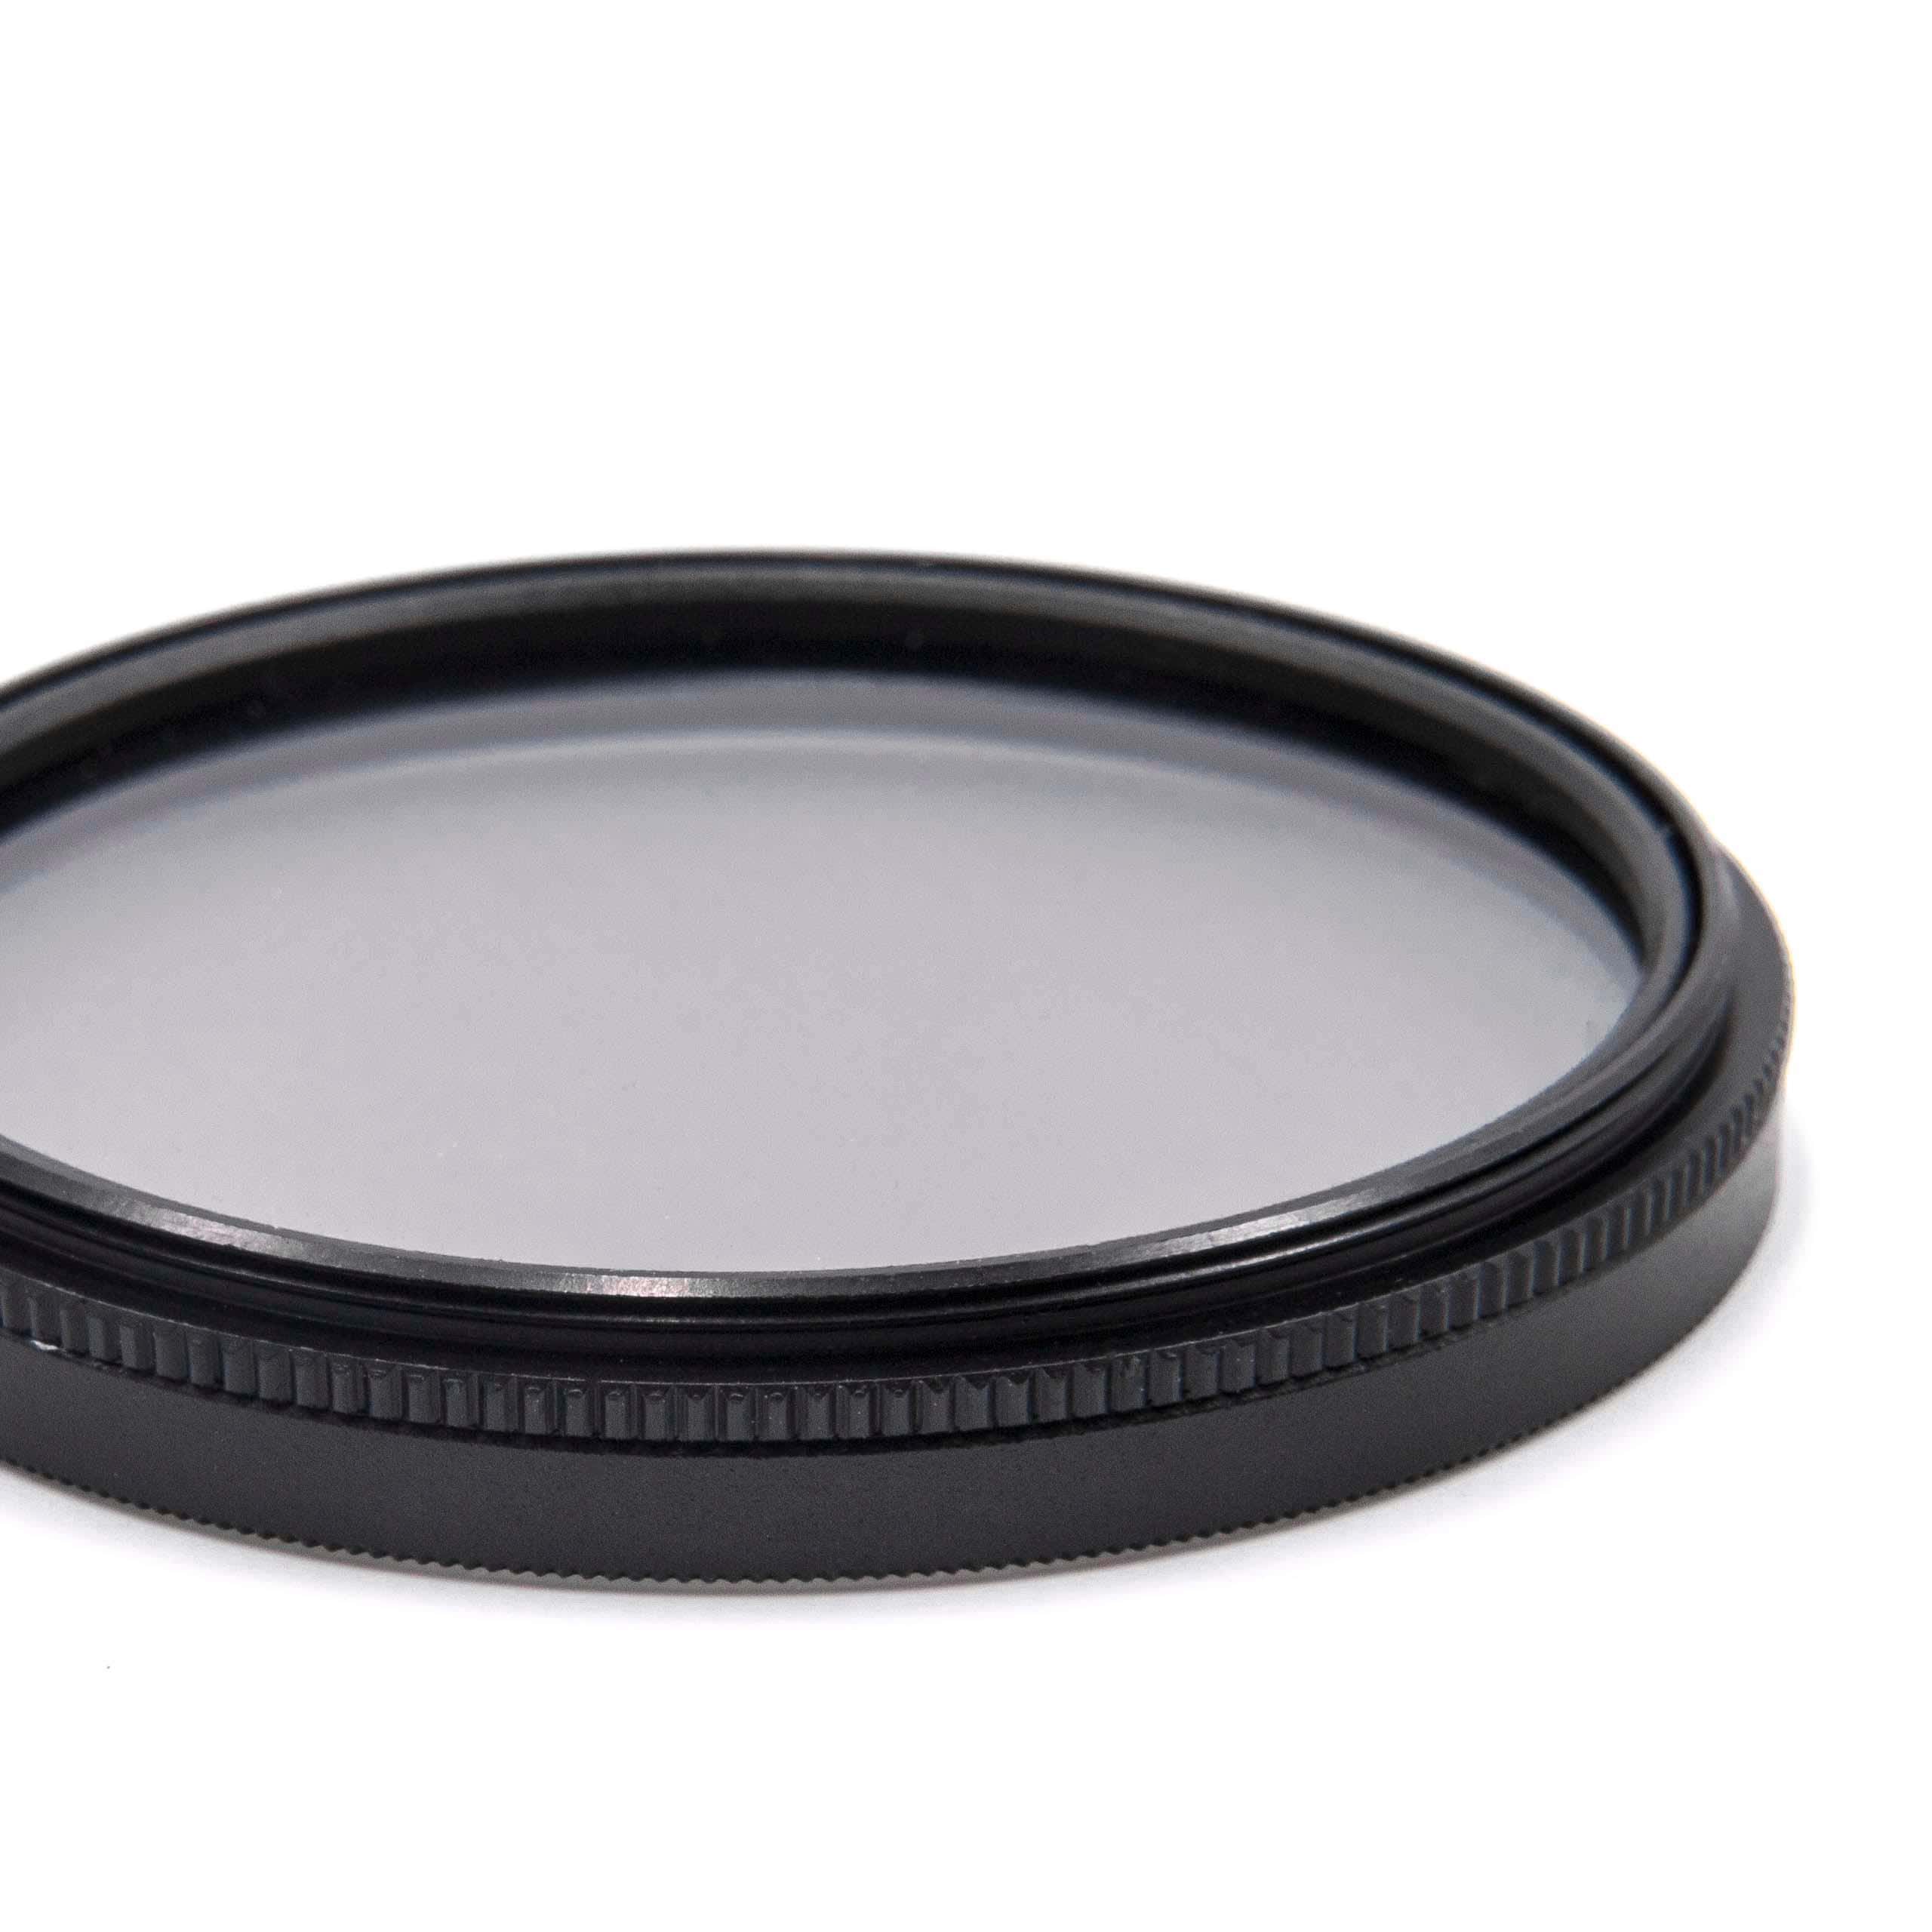 Filtre polarisant pour appareil photo et objectif de diamètre 52 mm - Filtre CPL